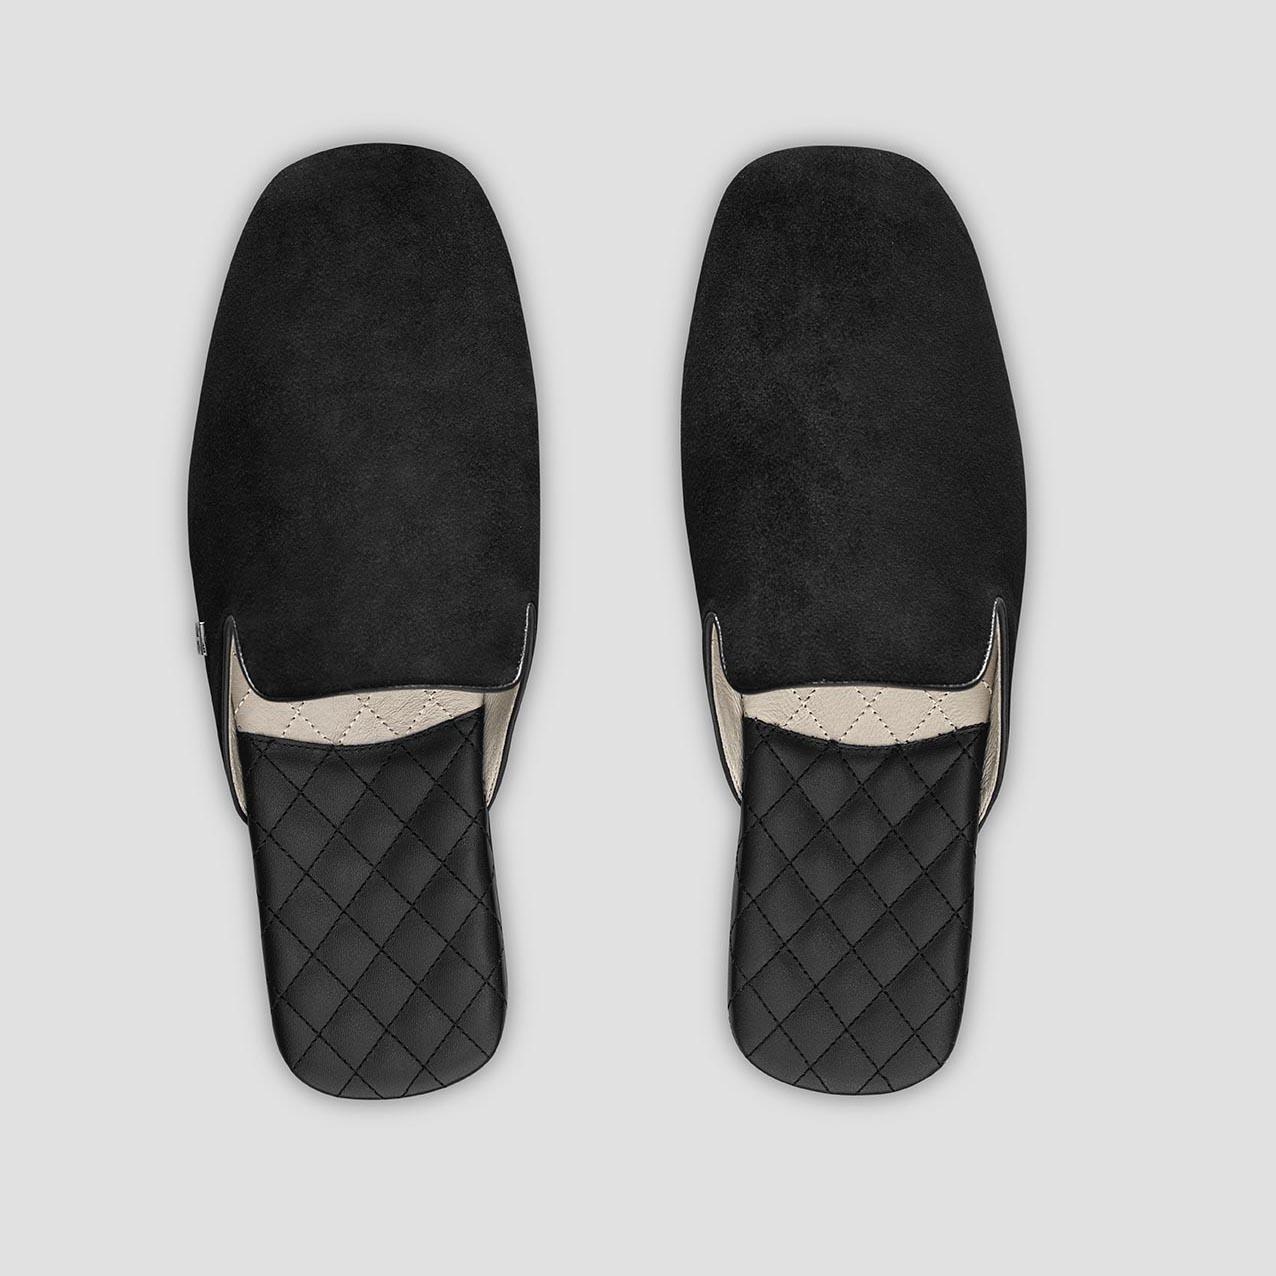 тапочки togas реон черные мужские кожаные размер 40 41 Тапочки Togas Реон черные мужские кожаные, размер 42-43